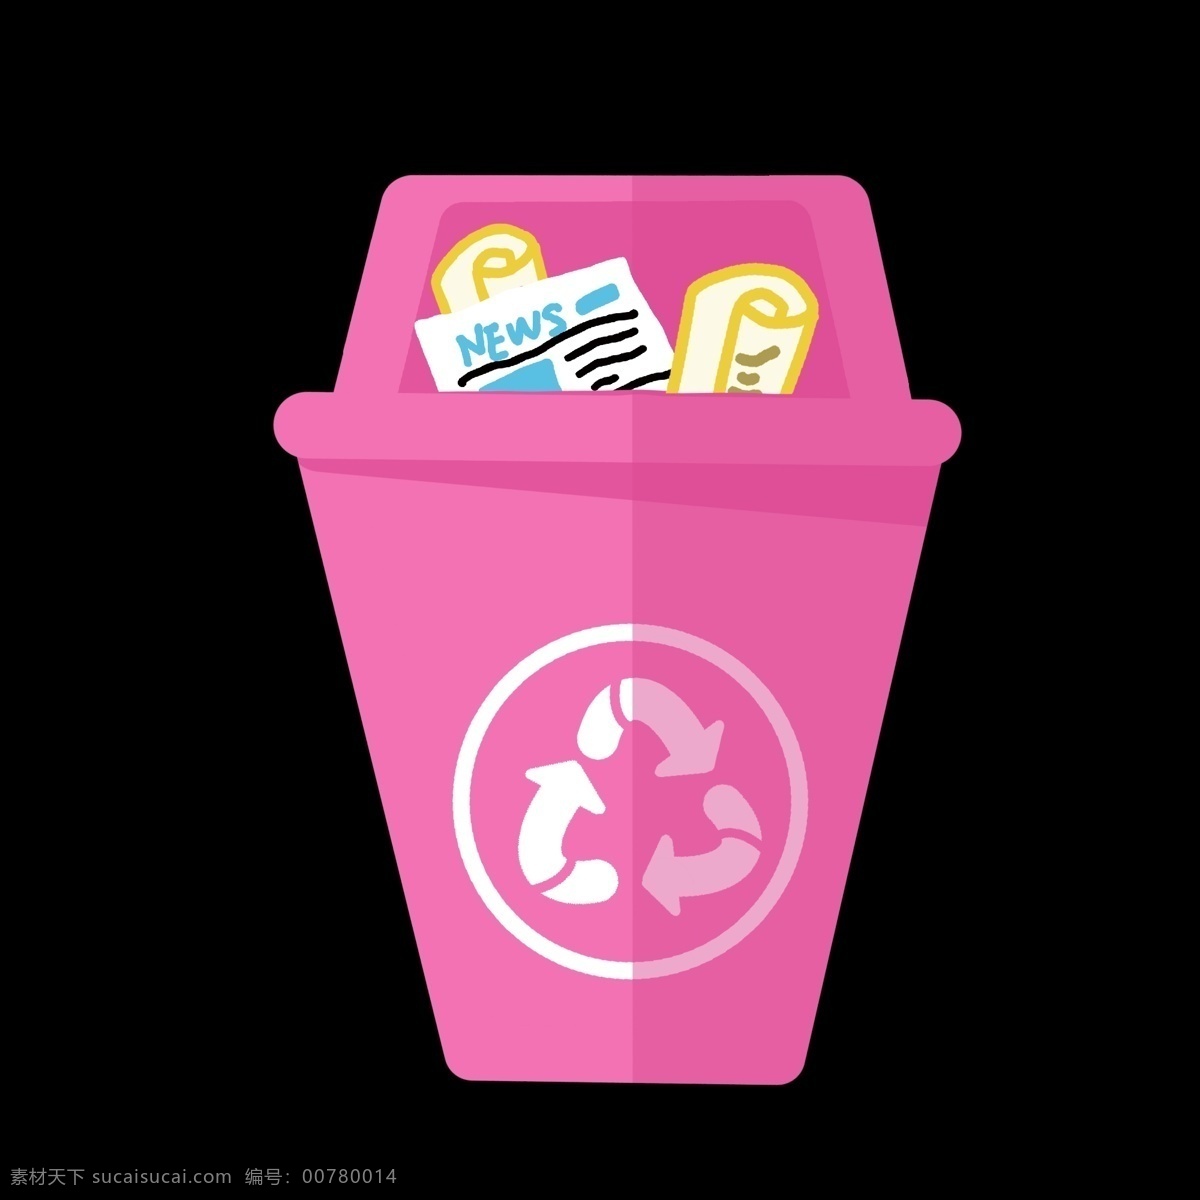 粉色 垃圾桶 分类 图标 垃圾 分类表 分解 分化 分开 ppt专用 卡通 简约 简洁 简单 五颜六色